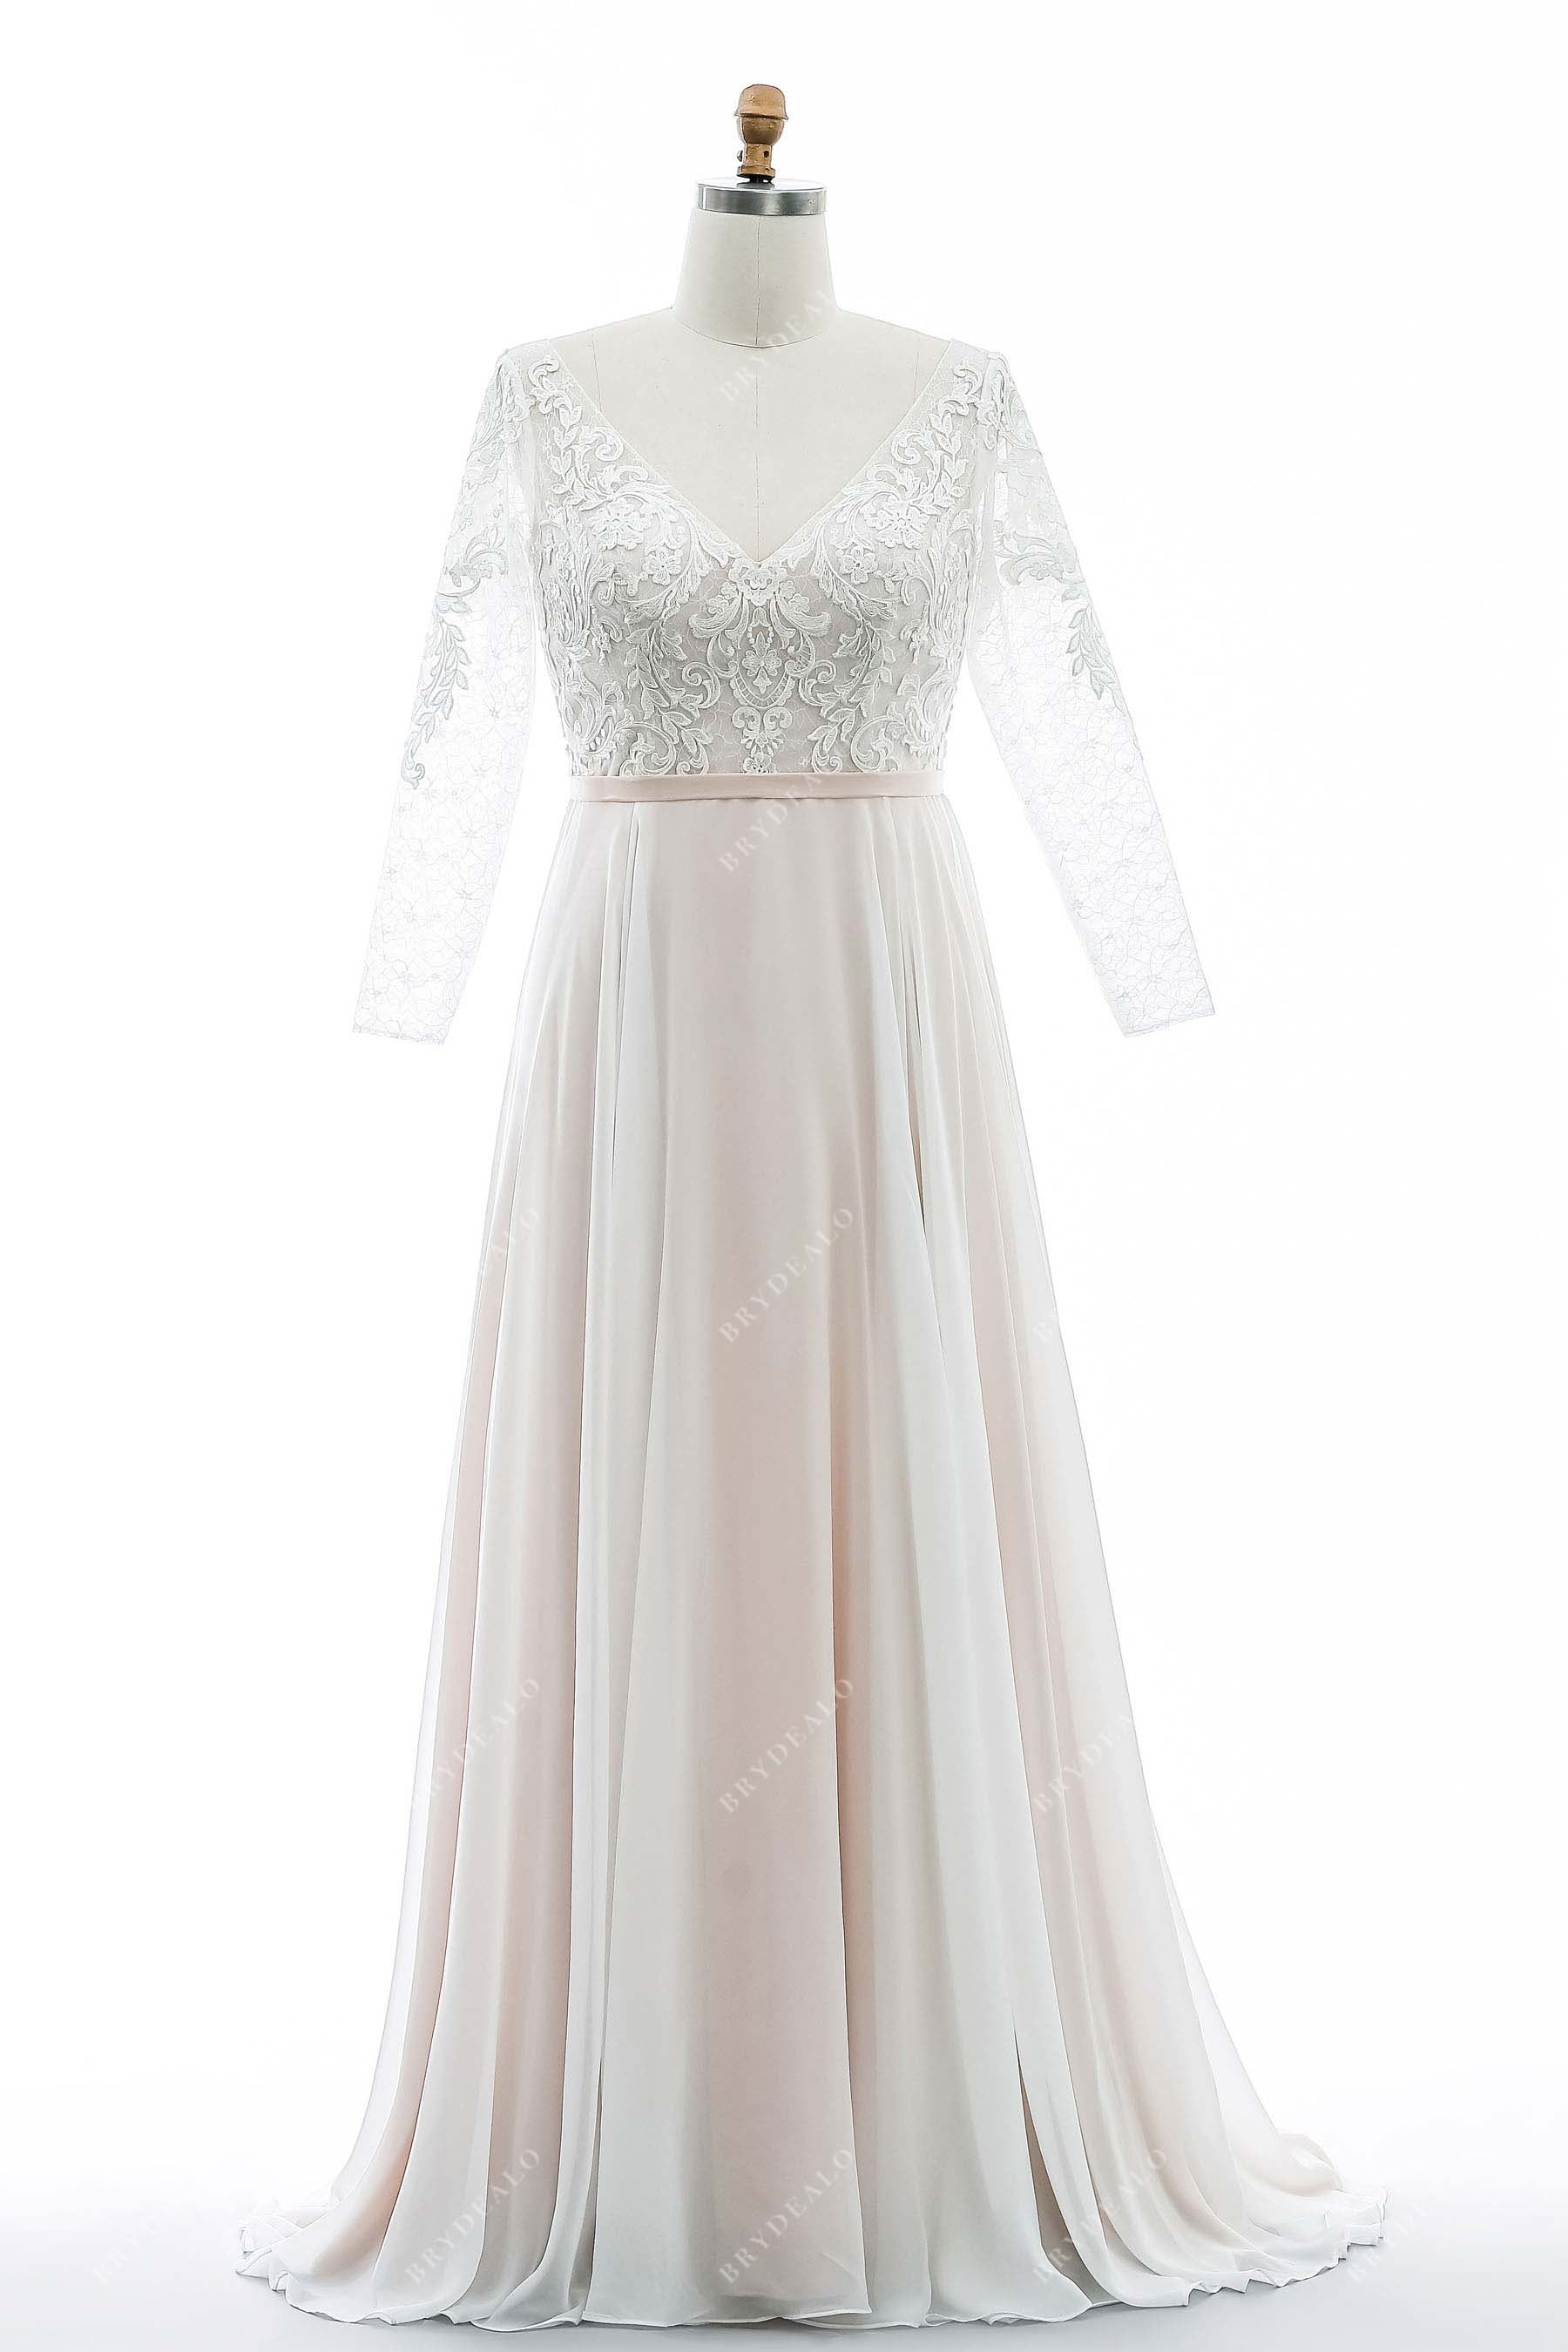 Lace Illusion Neck Long Sleeves Customized Wedding Dress